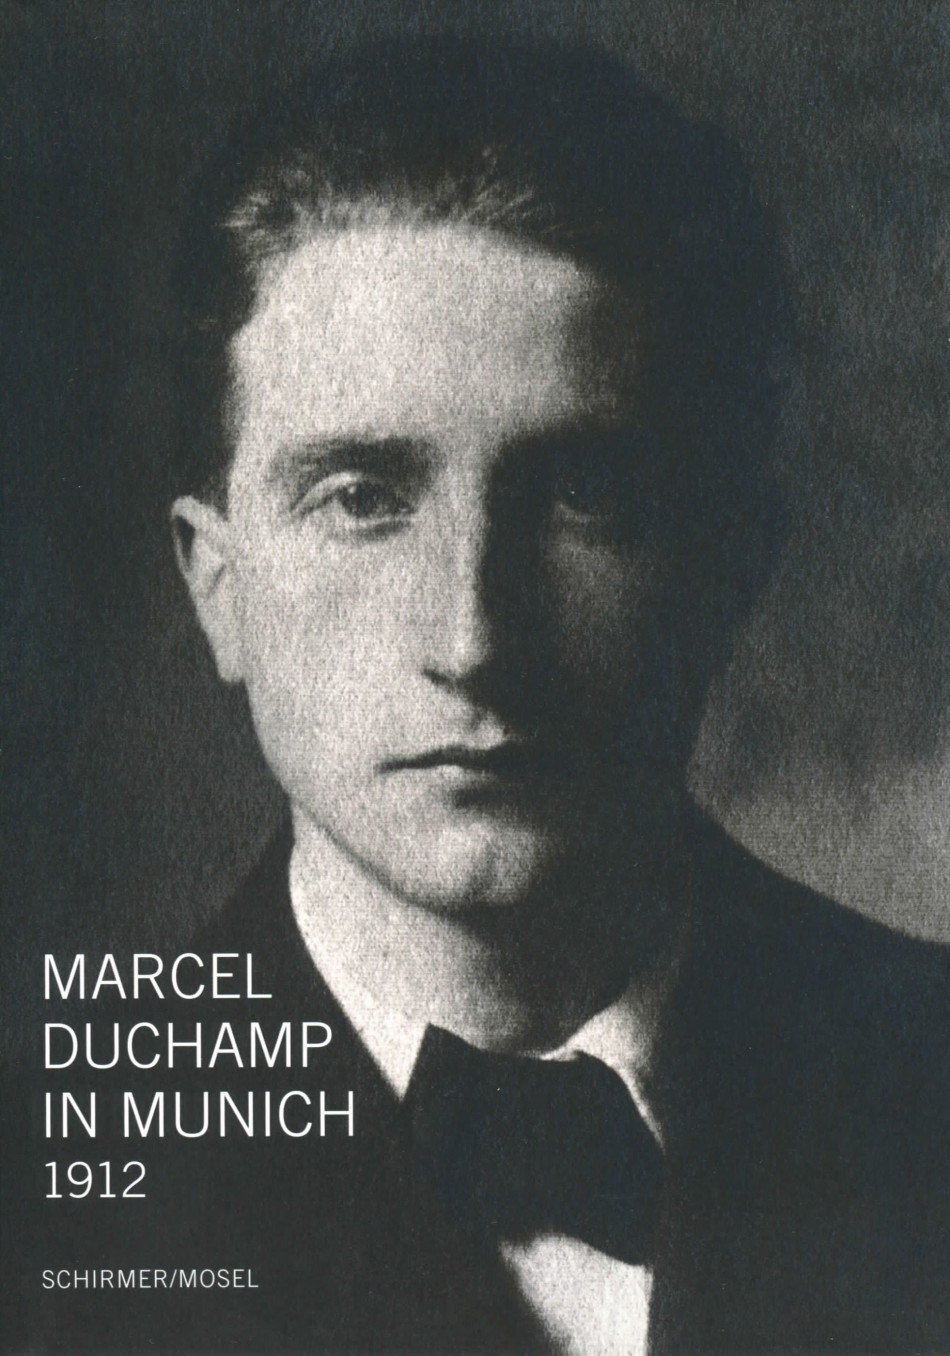 Marcel Duchamp в молодости